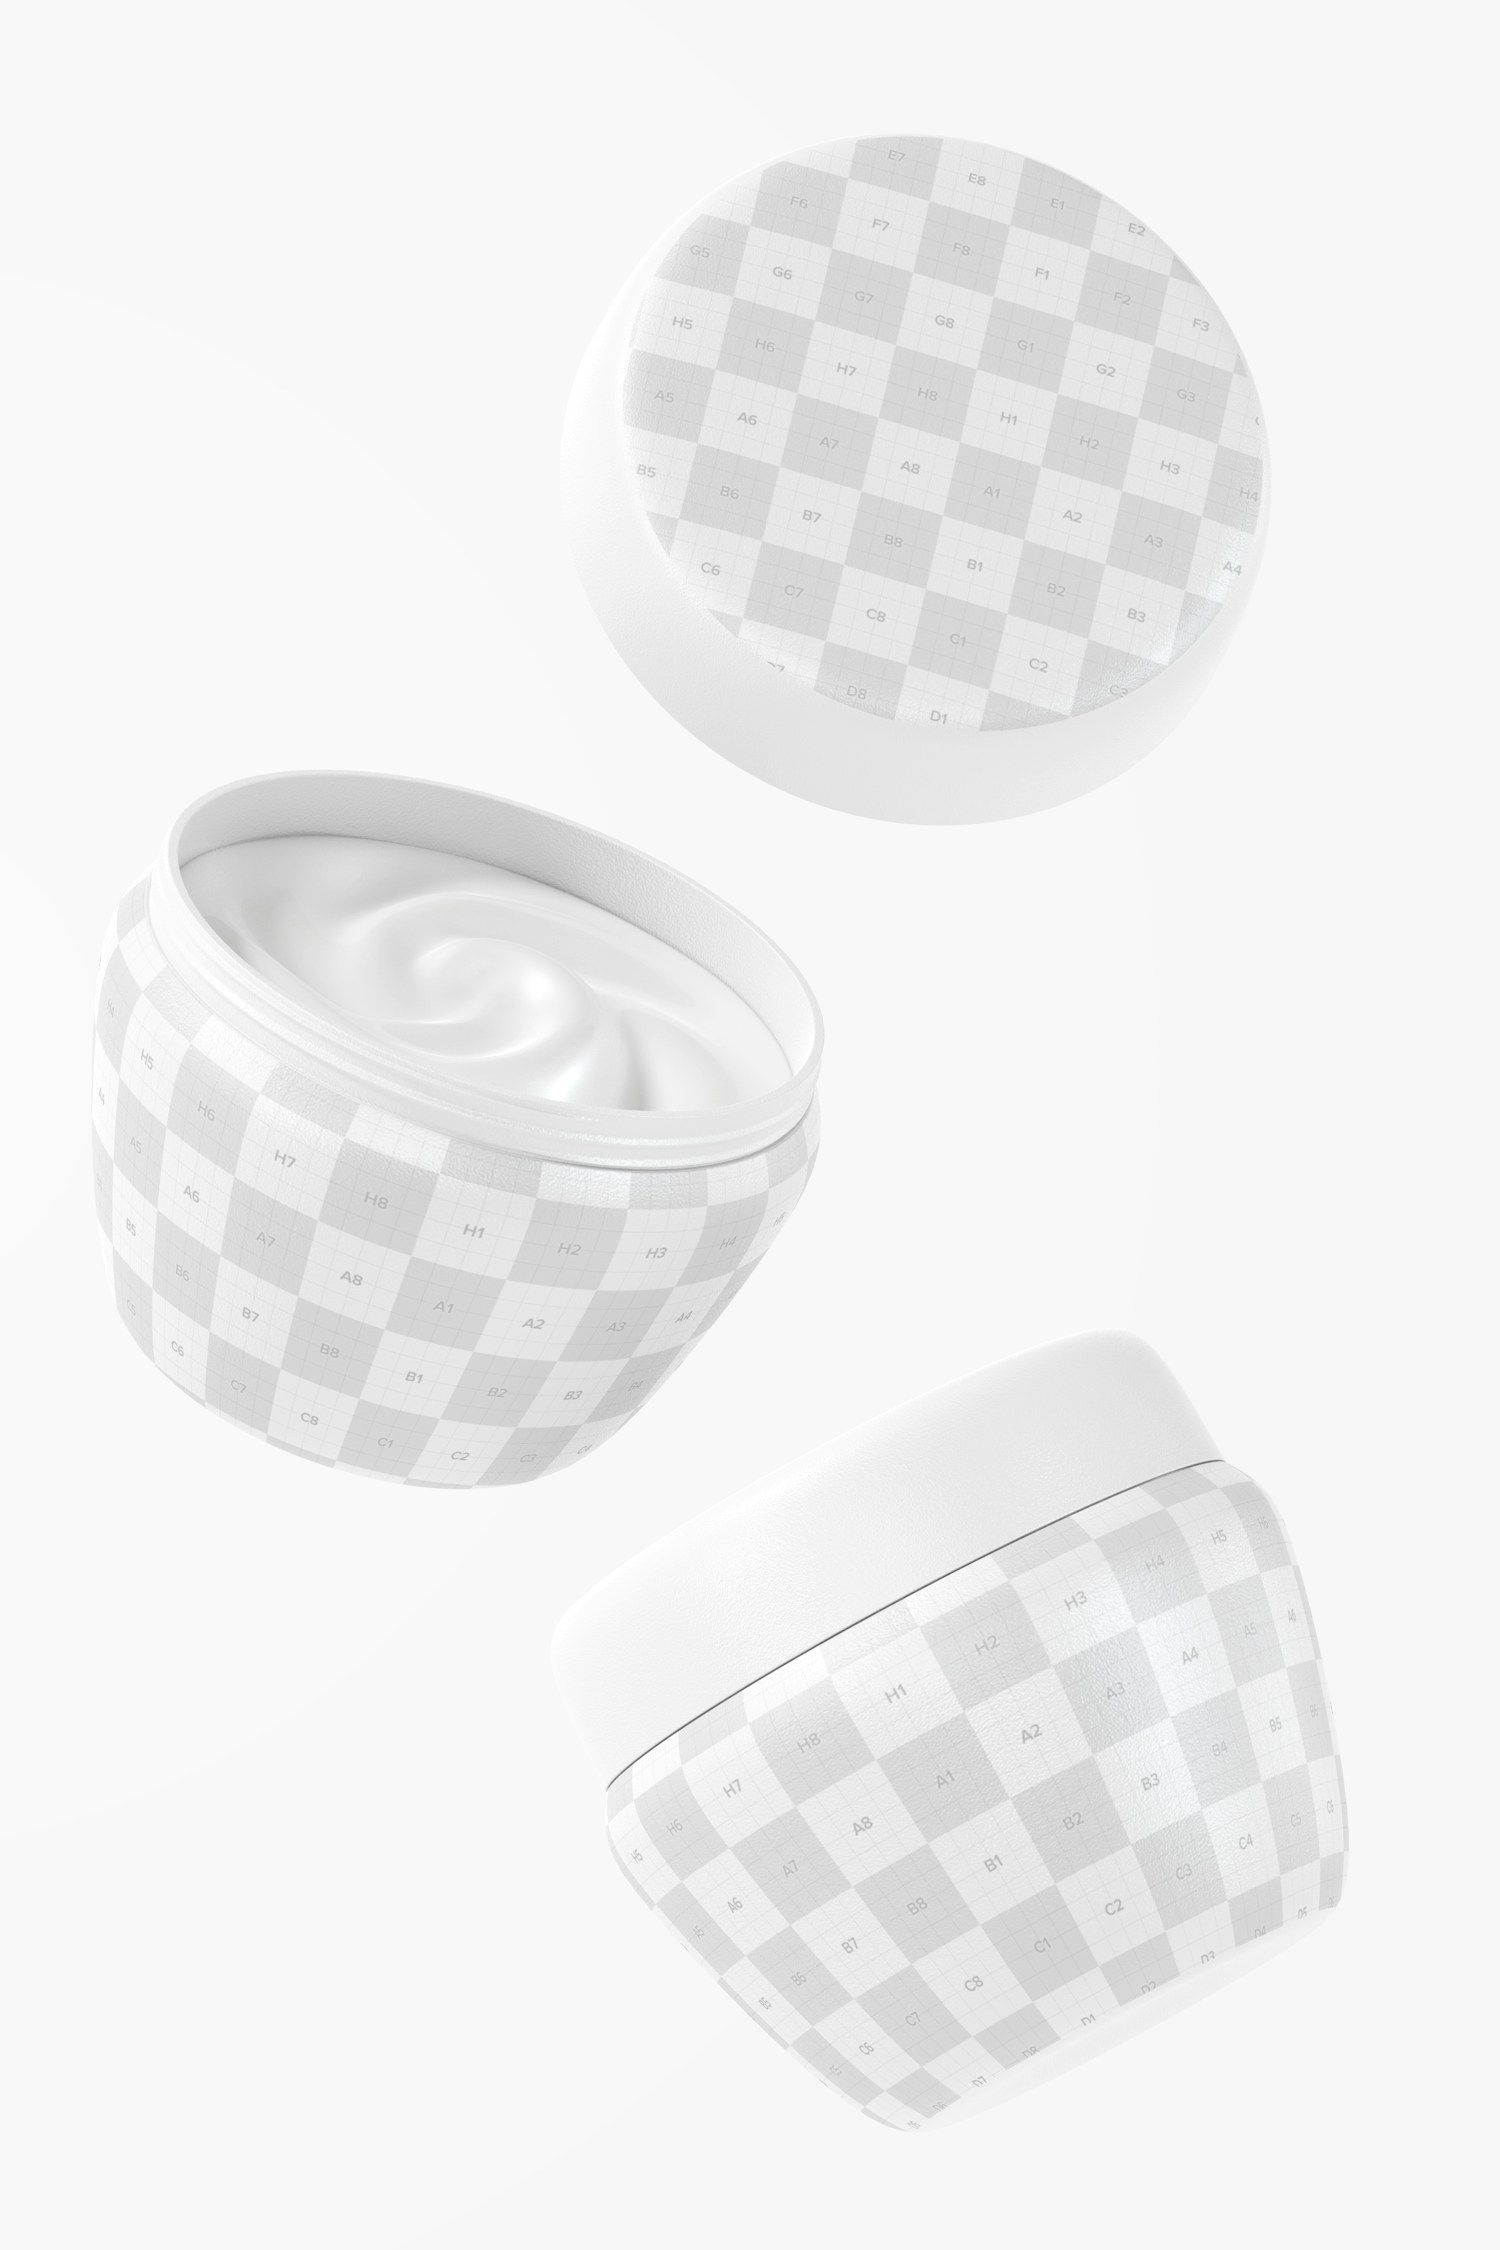 Maqueta de Mini Envases Plásticos para Crema con Tapa, Flotando